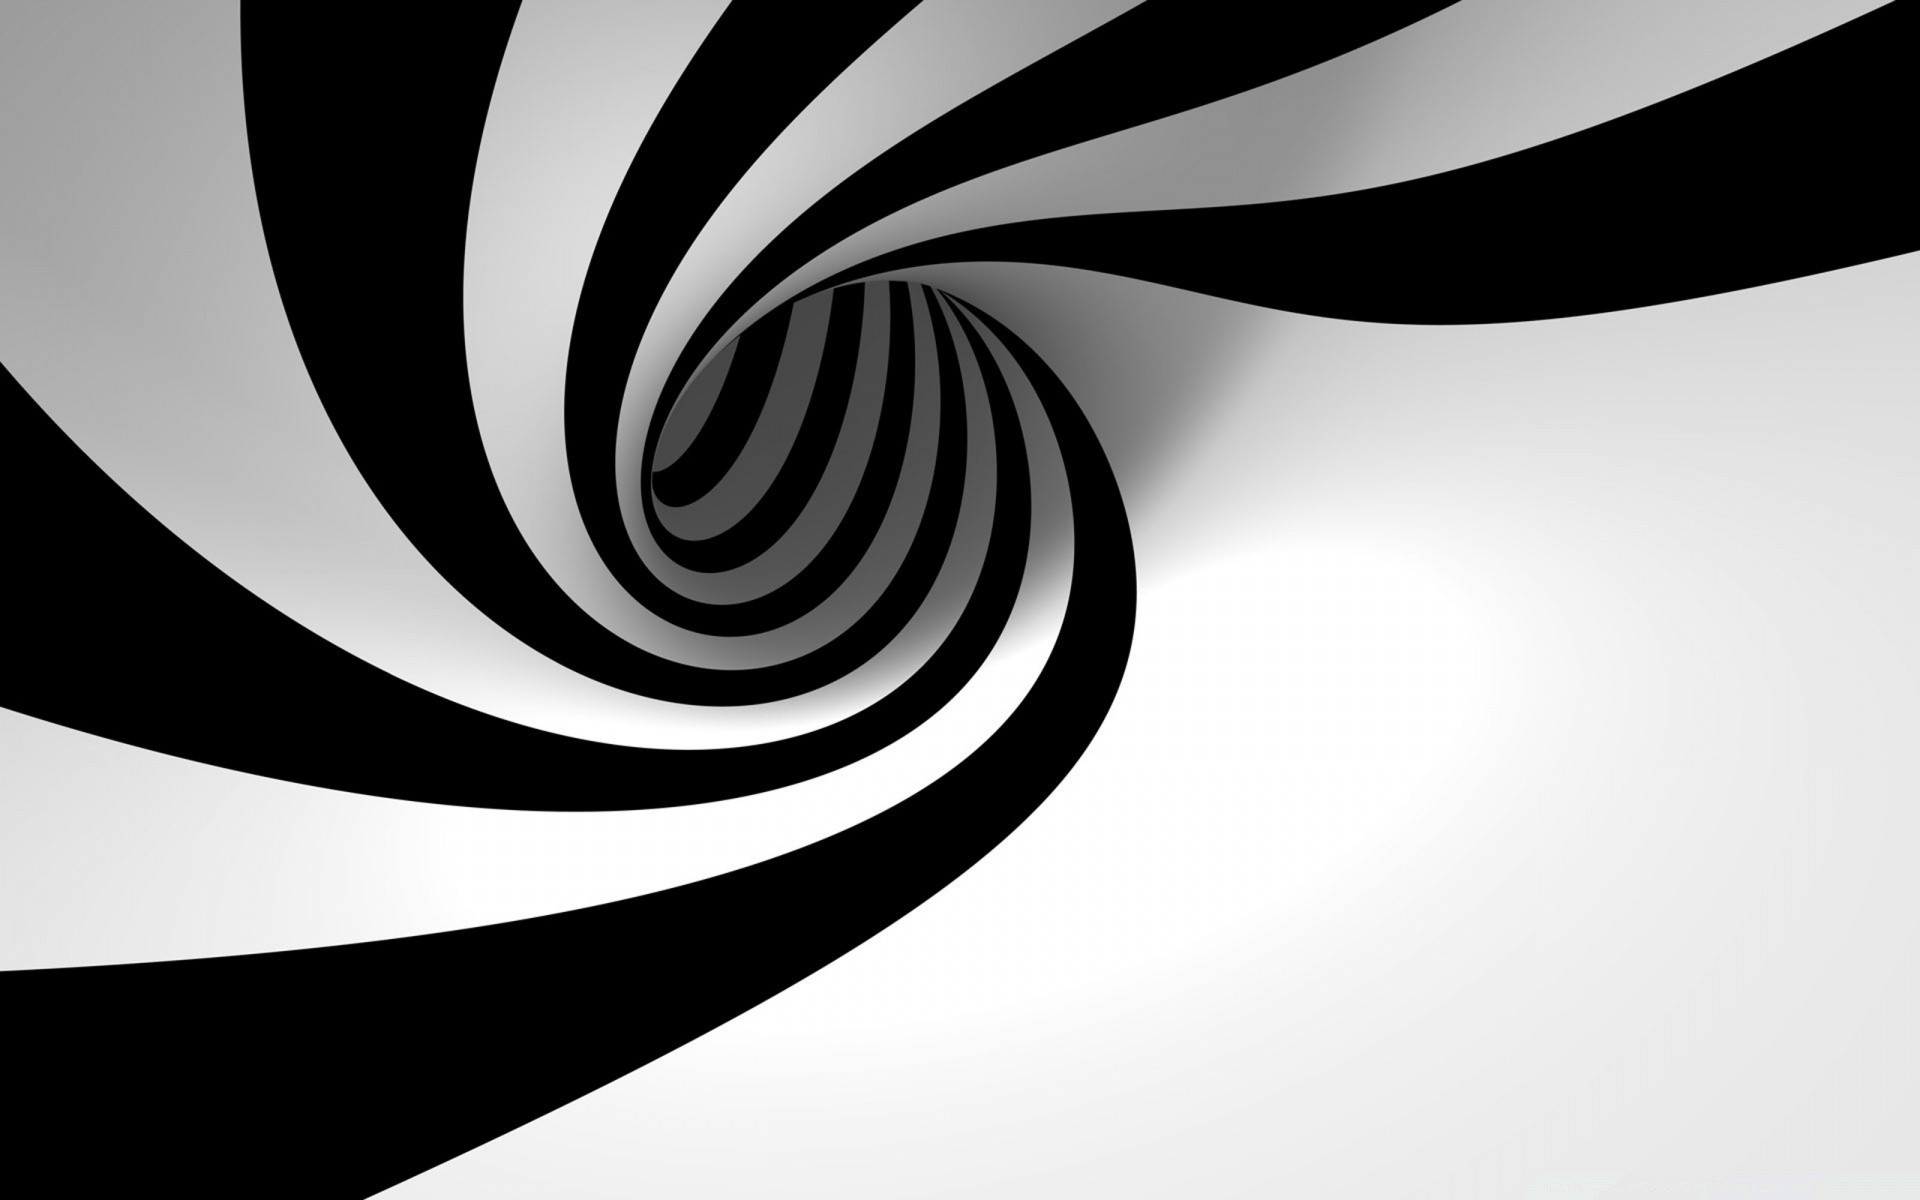 белое аннотация искусство шаблон график дизайн иллюстрация кривая рабочего стола линия вихрь футуристический вектор стиль спираль волна геометрические